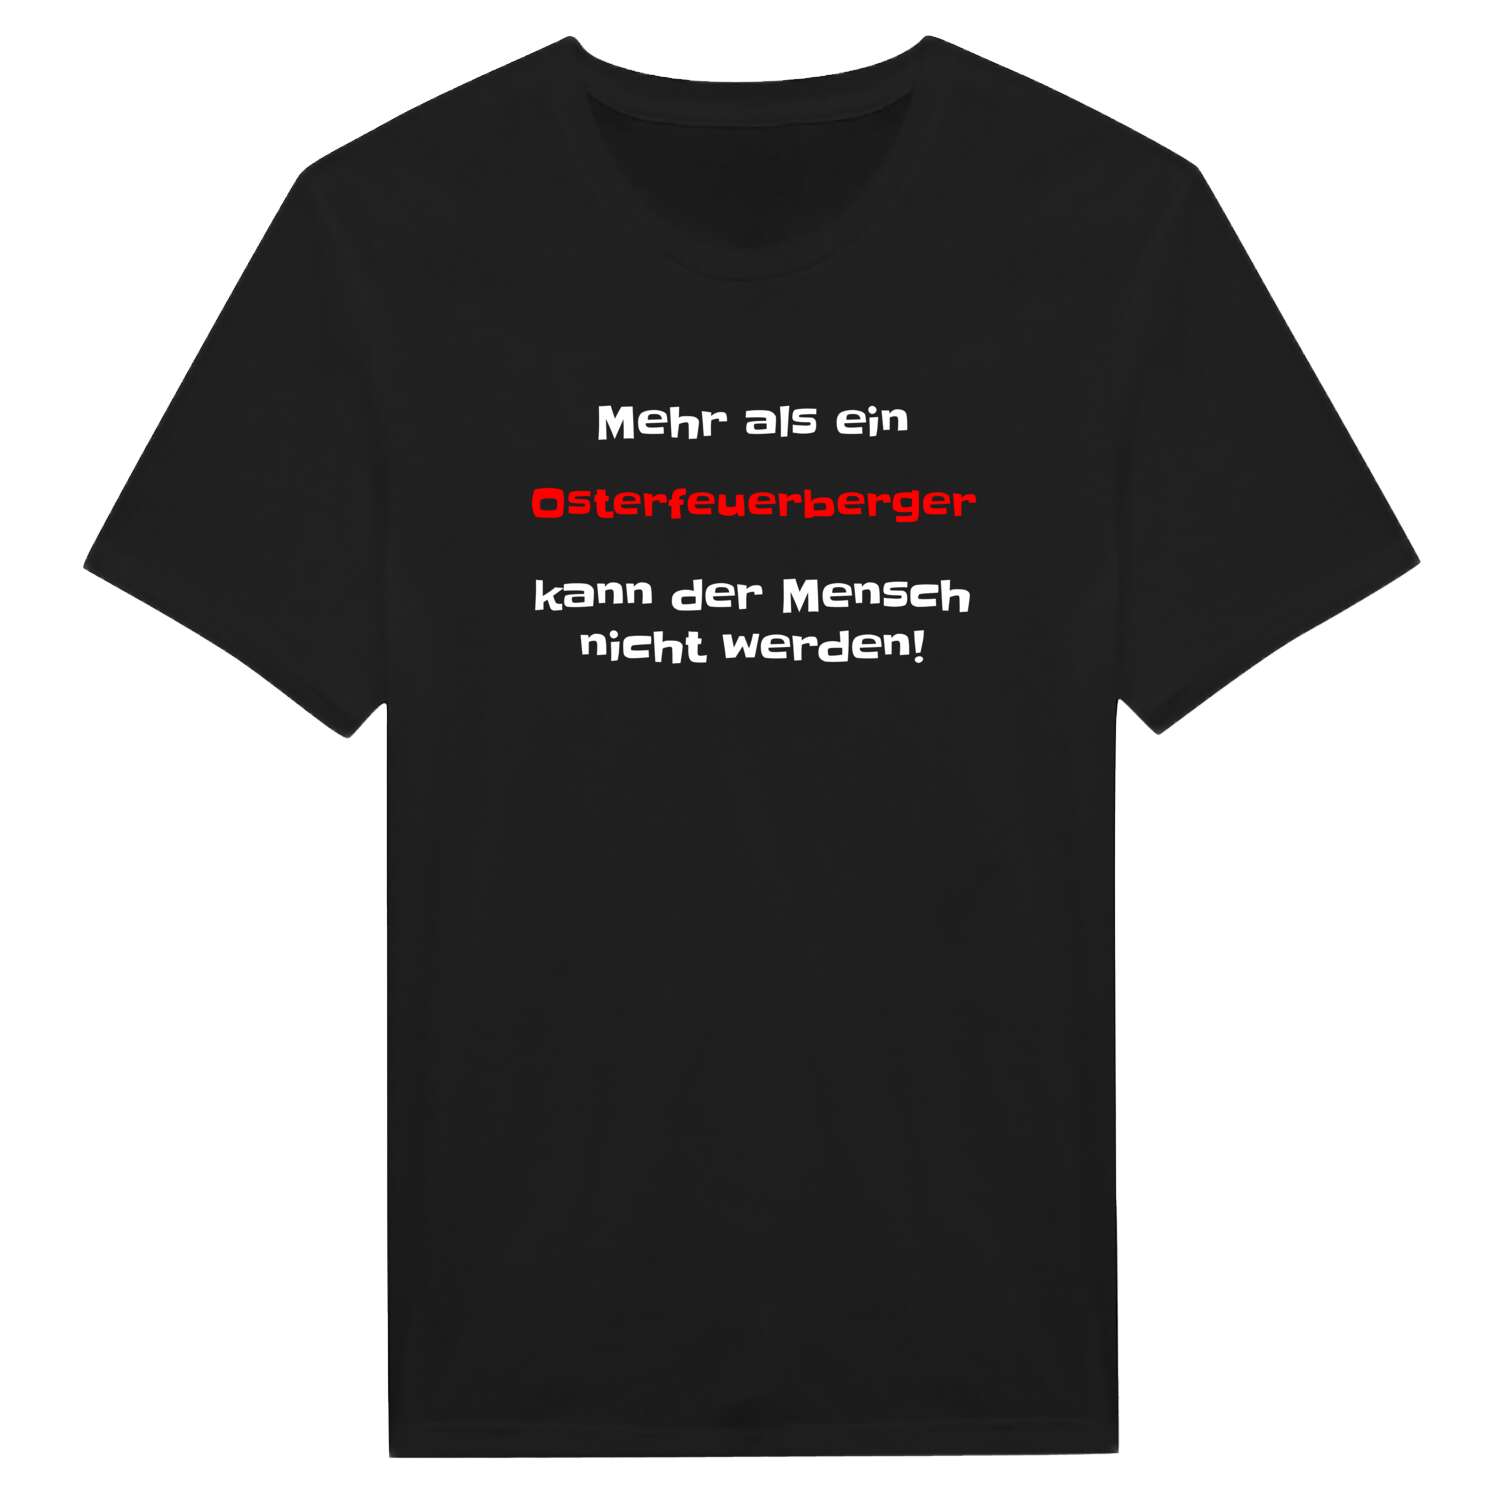 Osterfeuerberg T-Shirt »Mehr als ein«